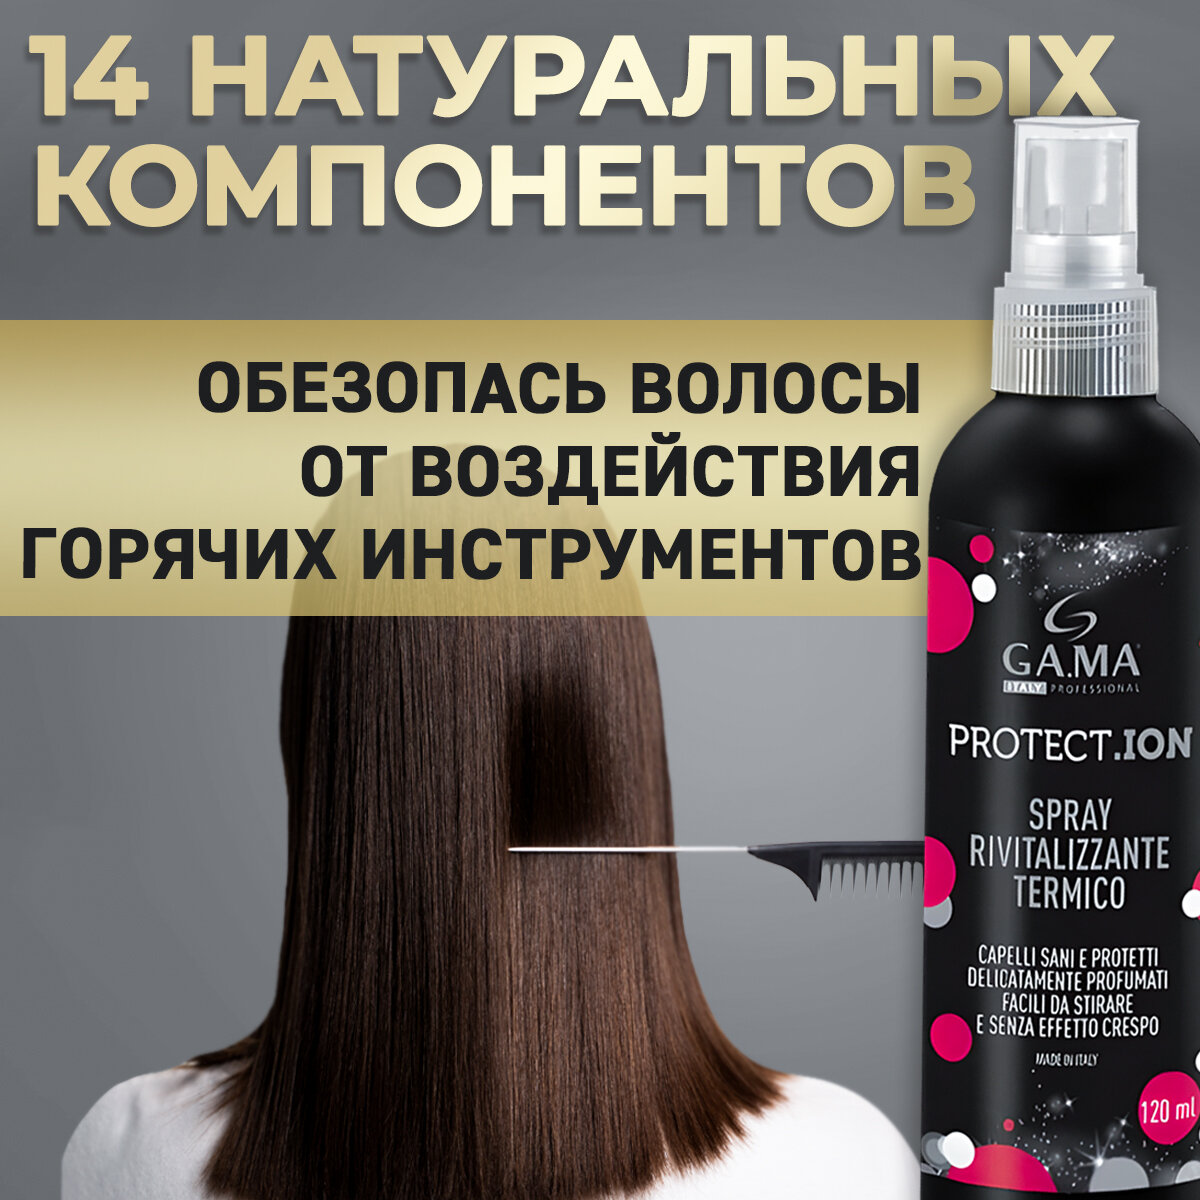 Средство для укладки волос GA.MA - фото №15